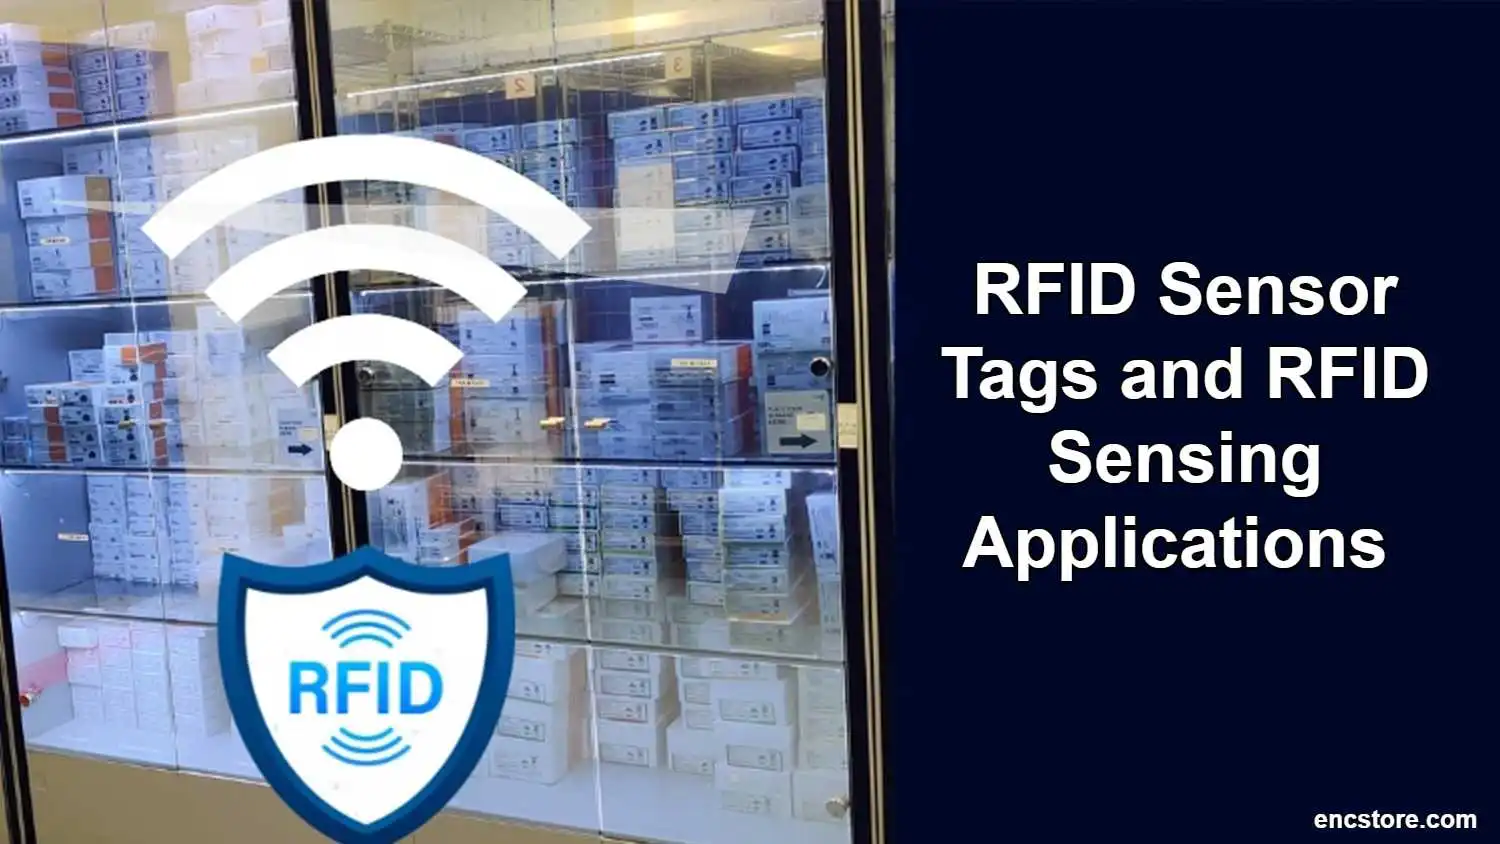 RFID Sensor Tags and RFID Sensing Applications